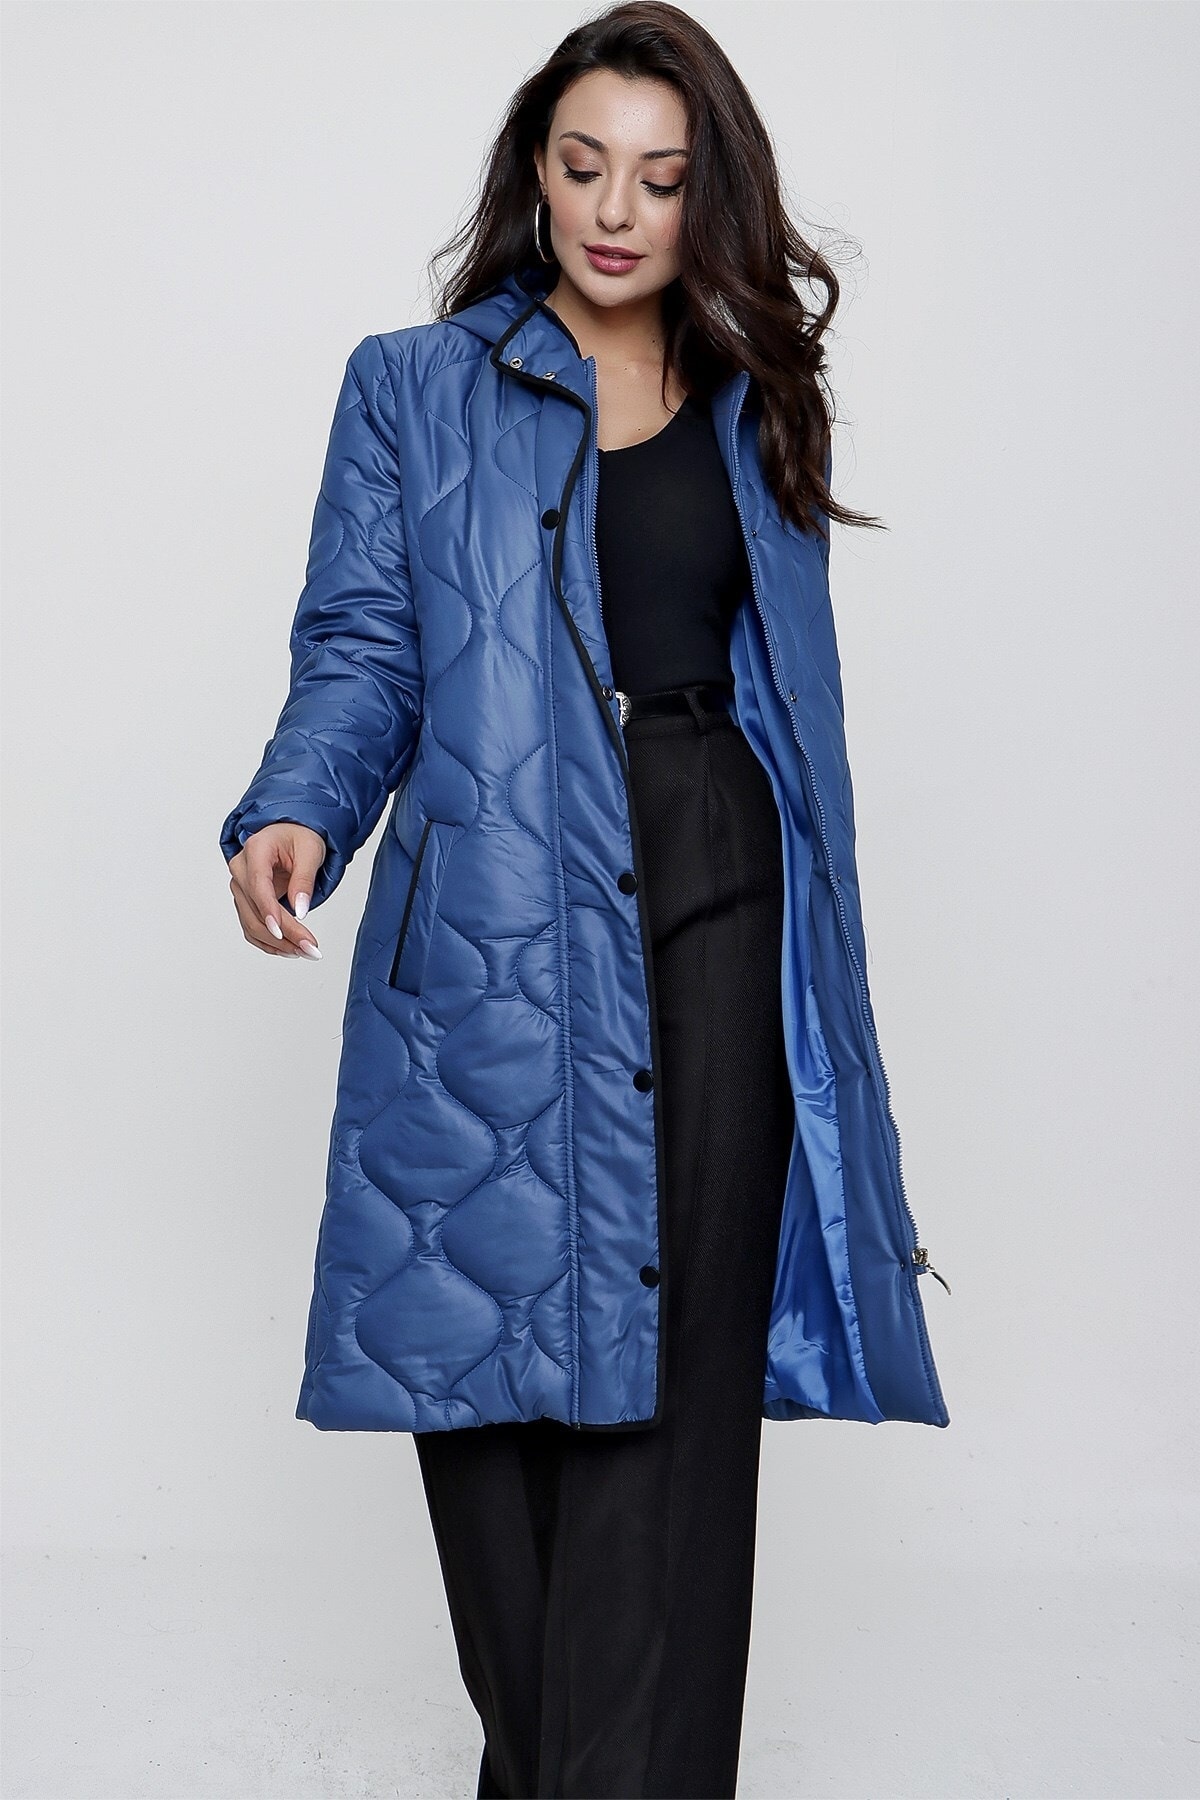 Levně By Saygı Modrý kapesní kabát s kapucí s vnitřní podšívkou